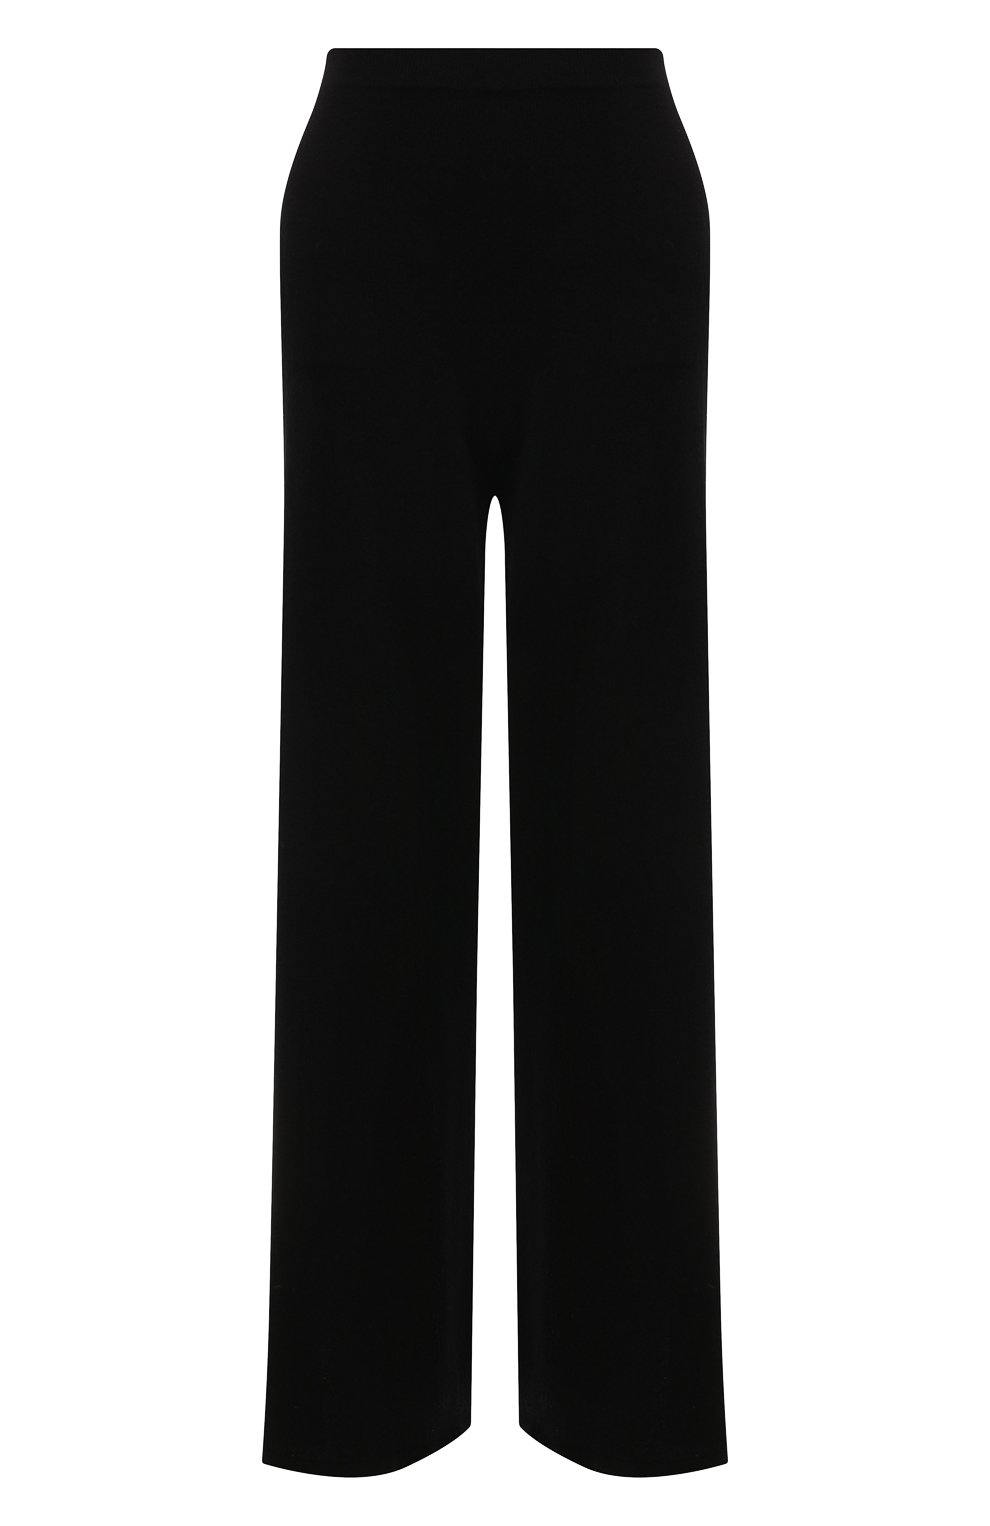 Кашемировые брюки Wolford Чёрный 52918 